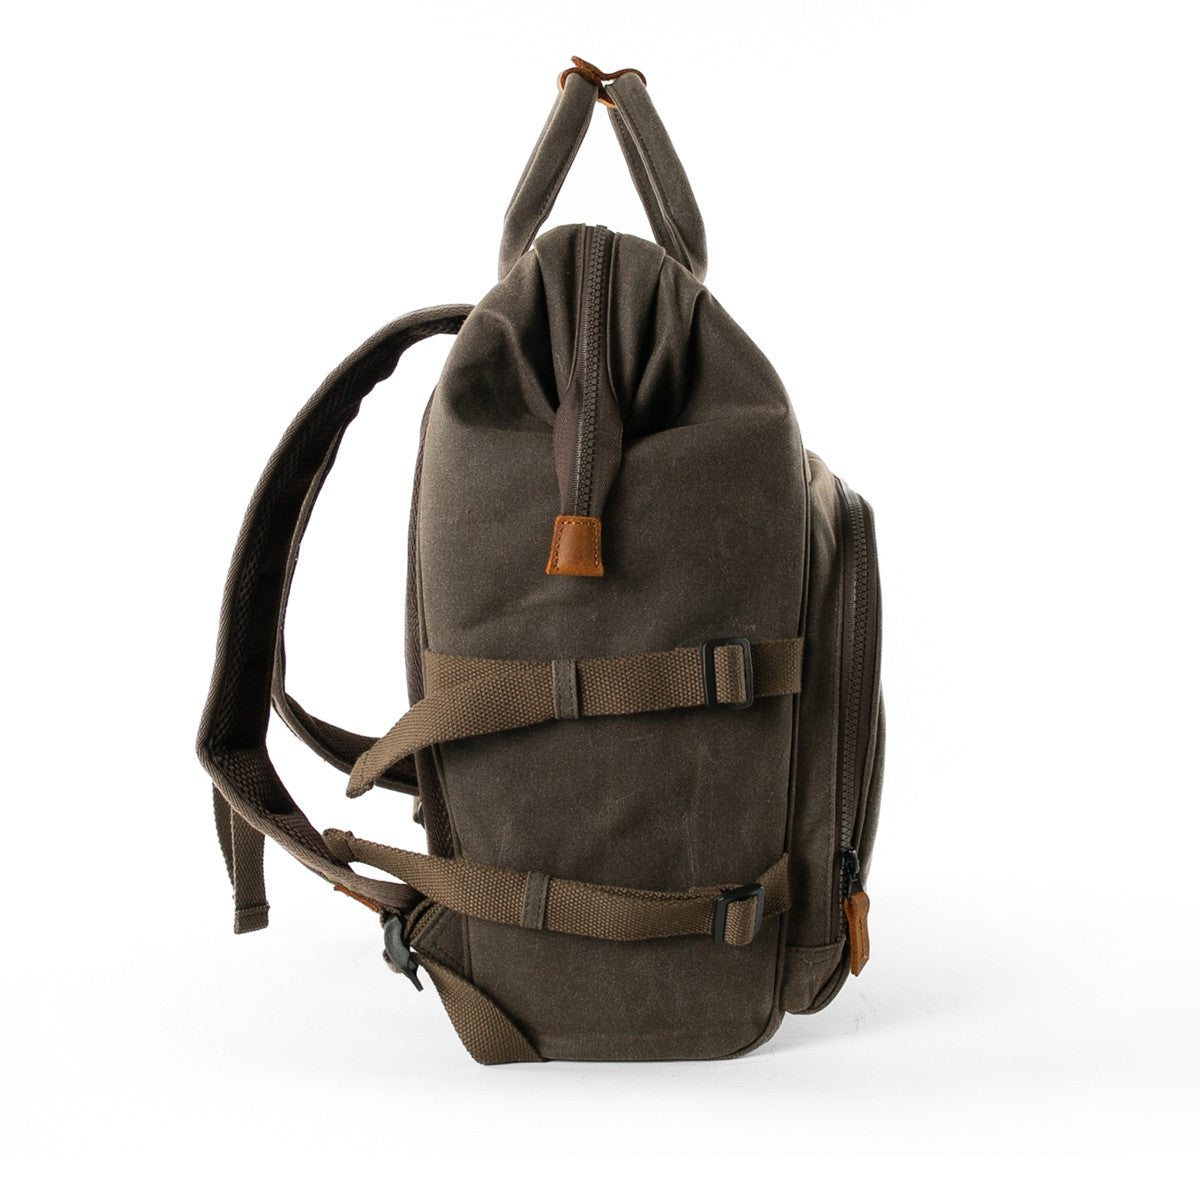 Picnic coolbag rucksack showing adjustable side straps for carrying picnic blanket